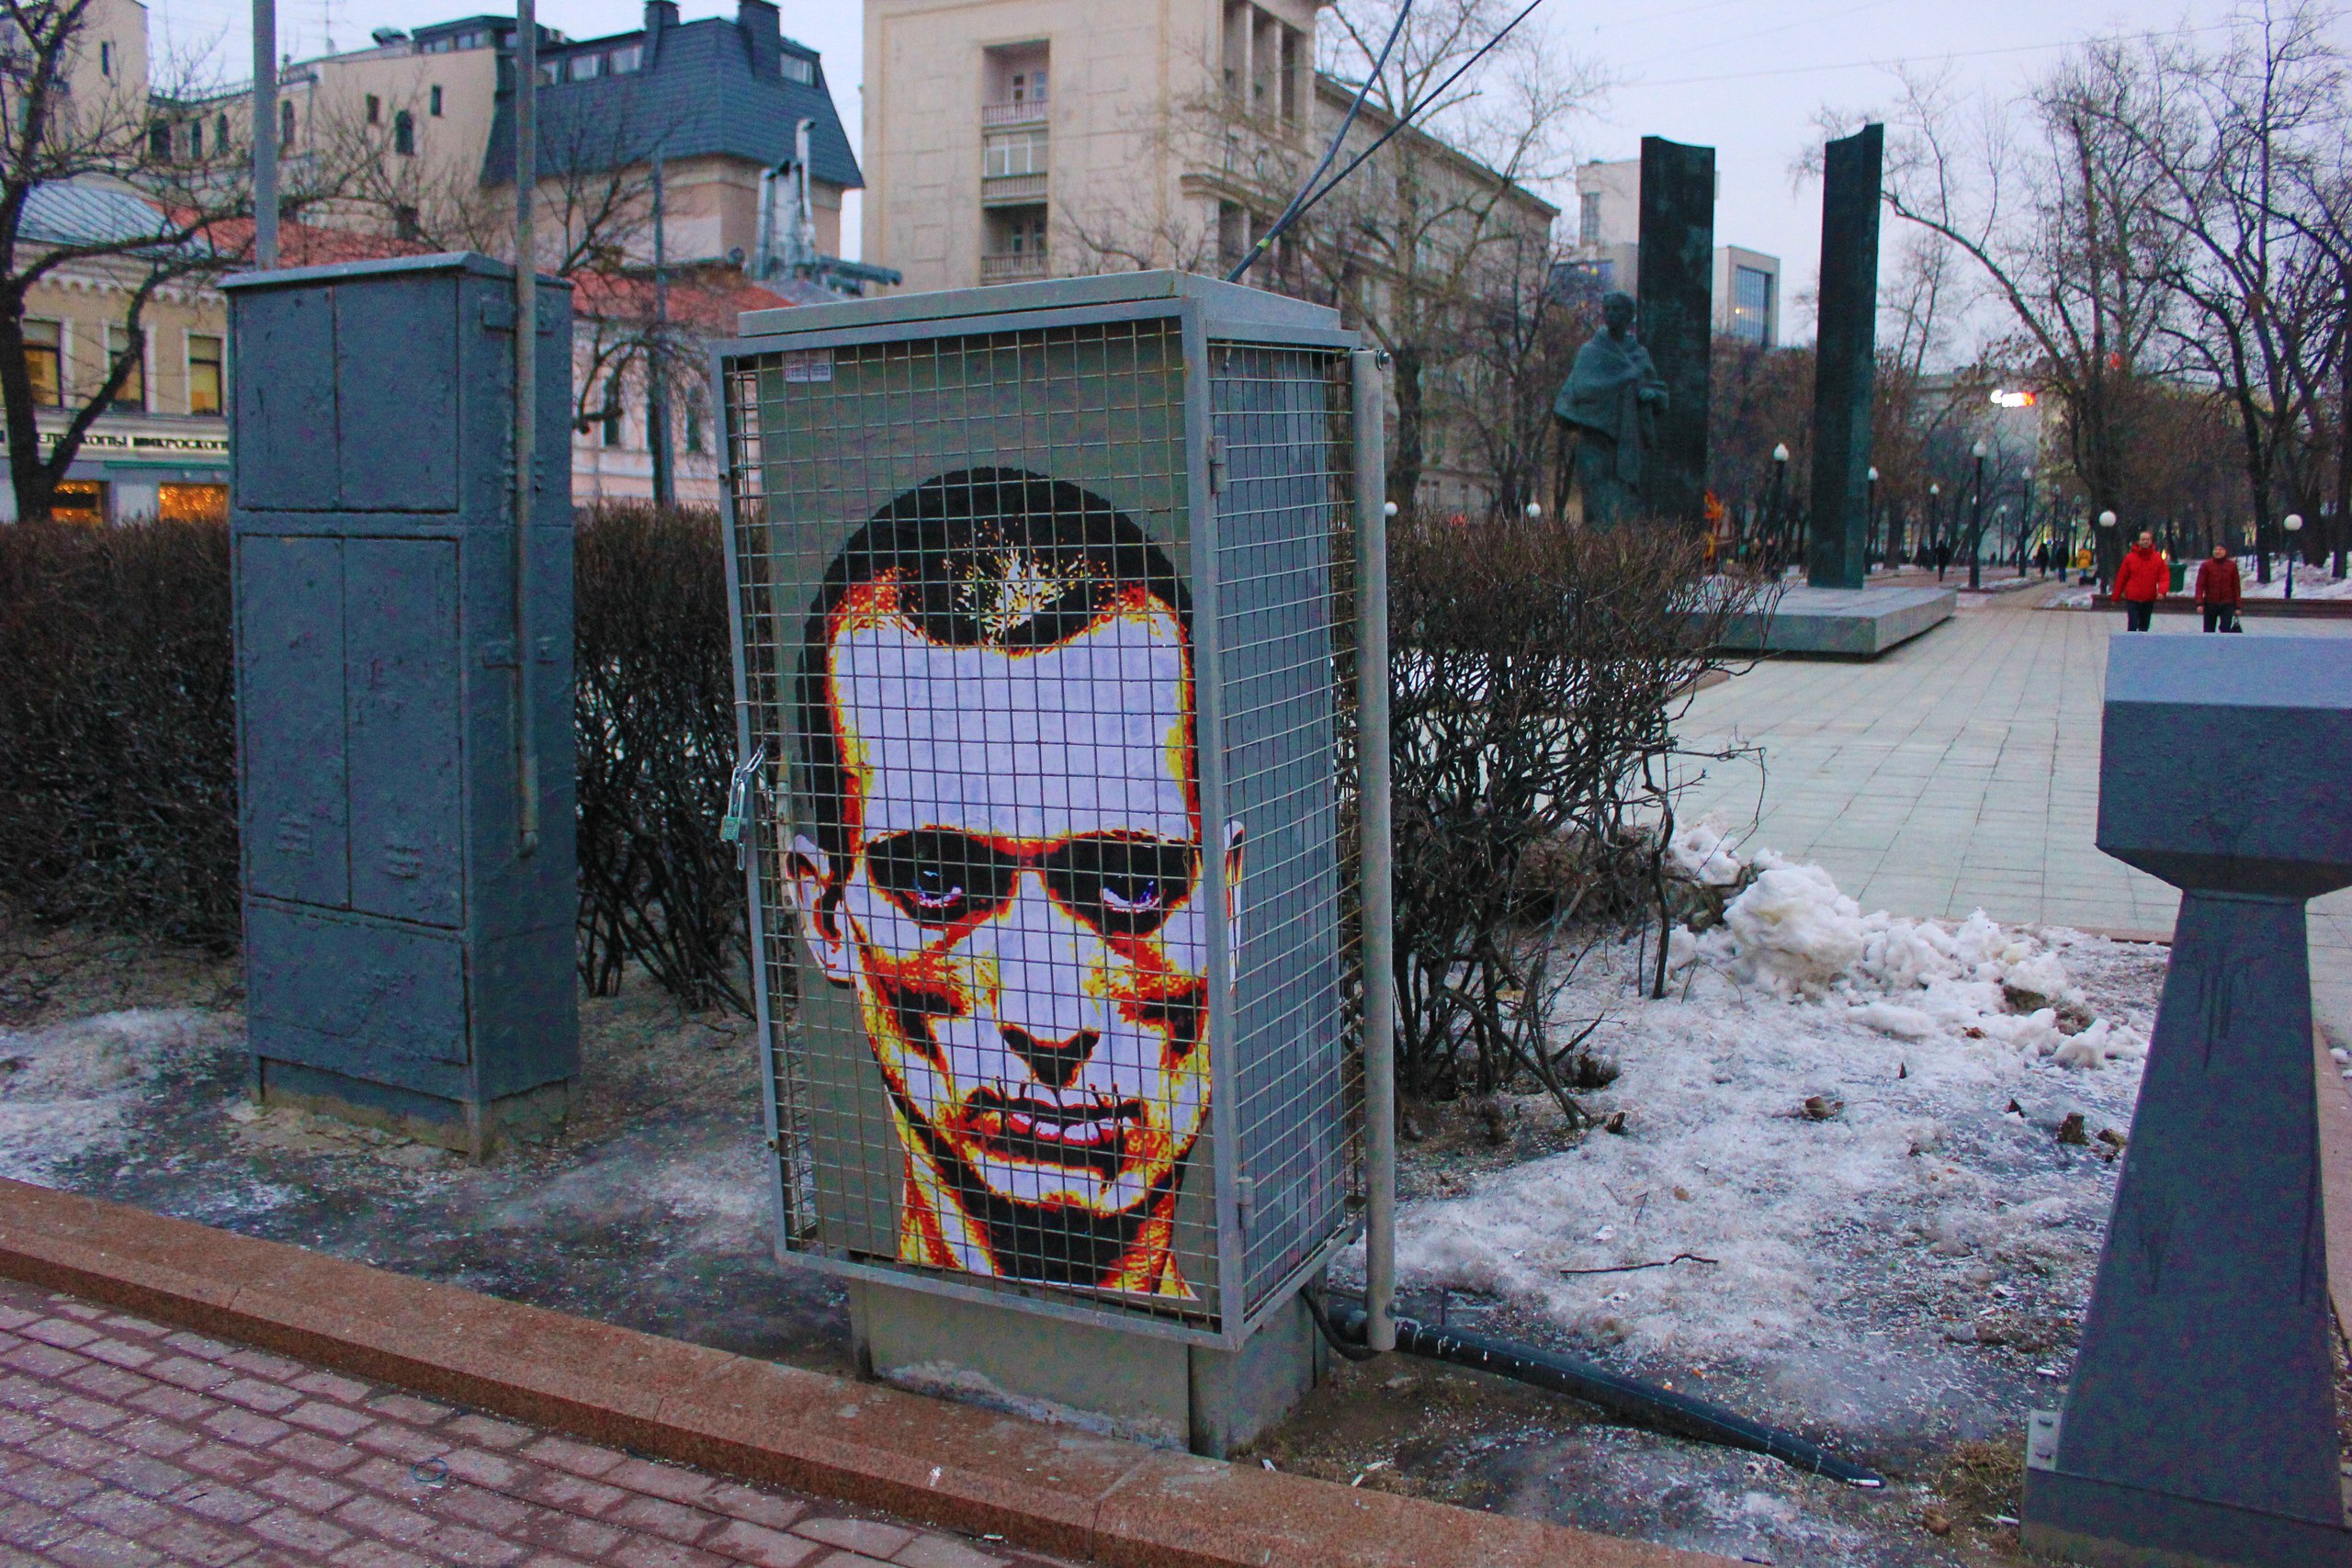 Портрет художника Петра Павленского Александр Жунев сделал 20 февраля 2016 года на электрошкафе на Большой Лубянке в Москве. Изображение оказалось за решеткой — на шкафу была сетка. На следующий день портрет закрасили полицейские <br>